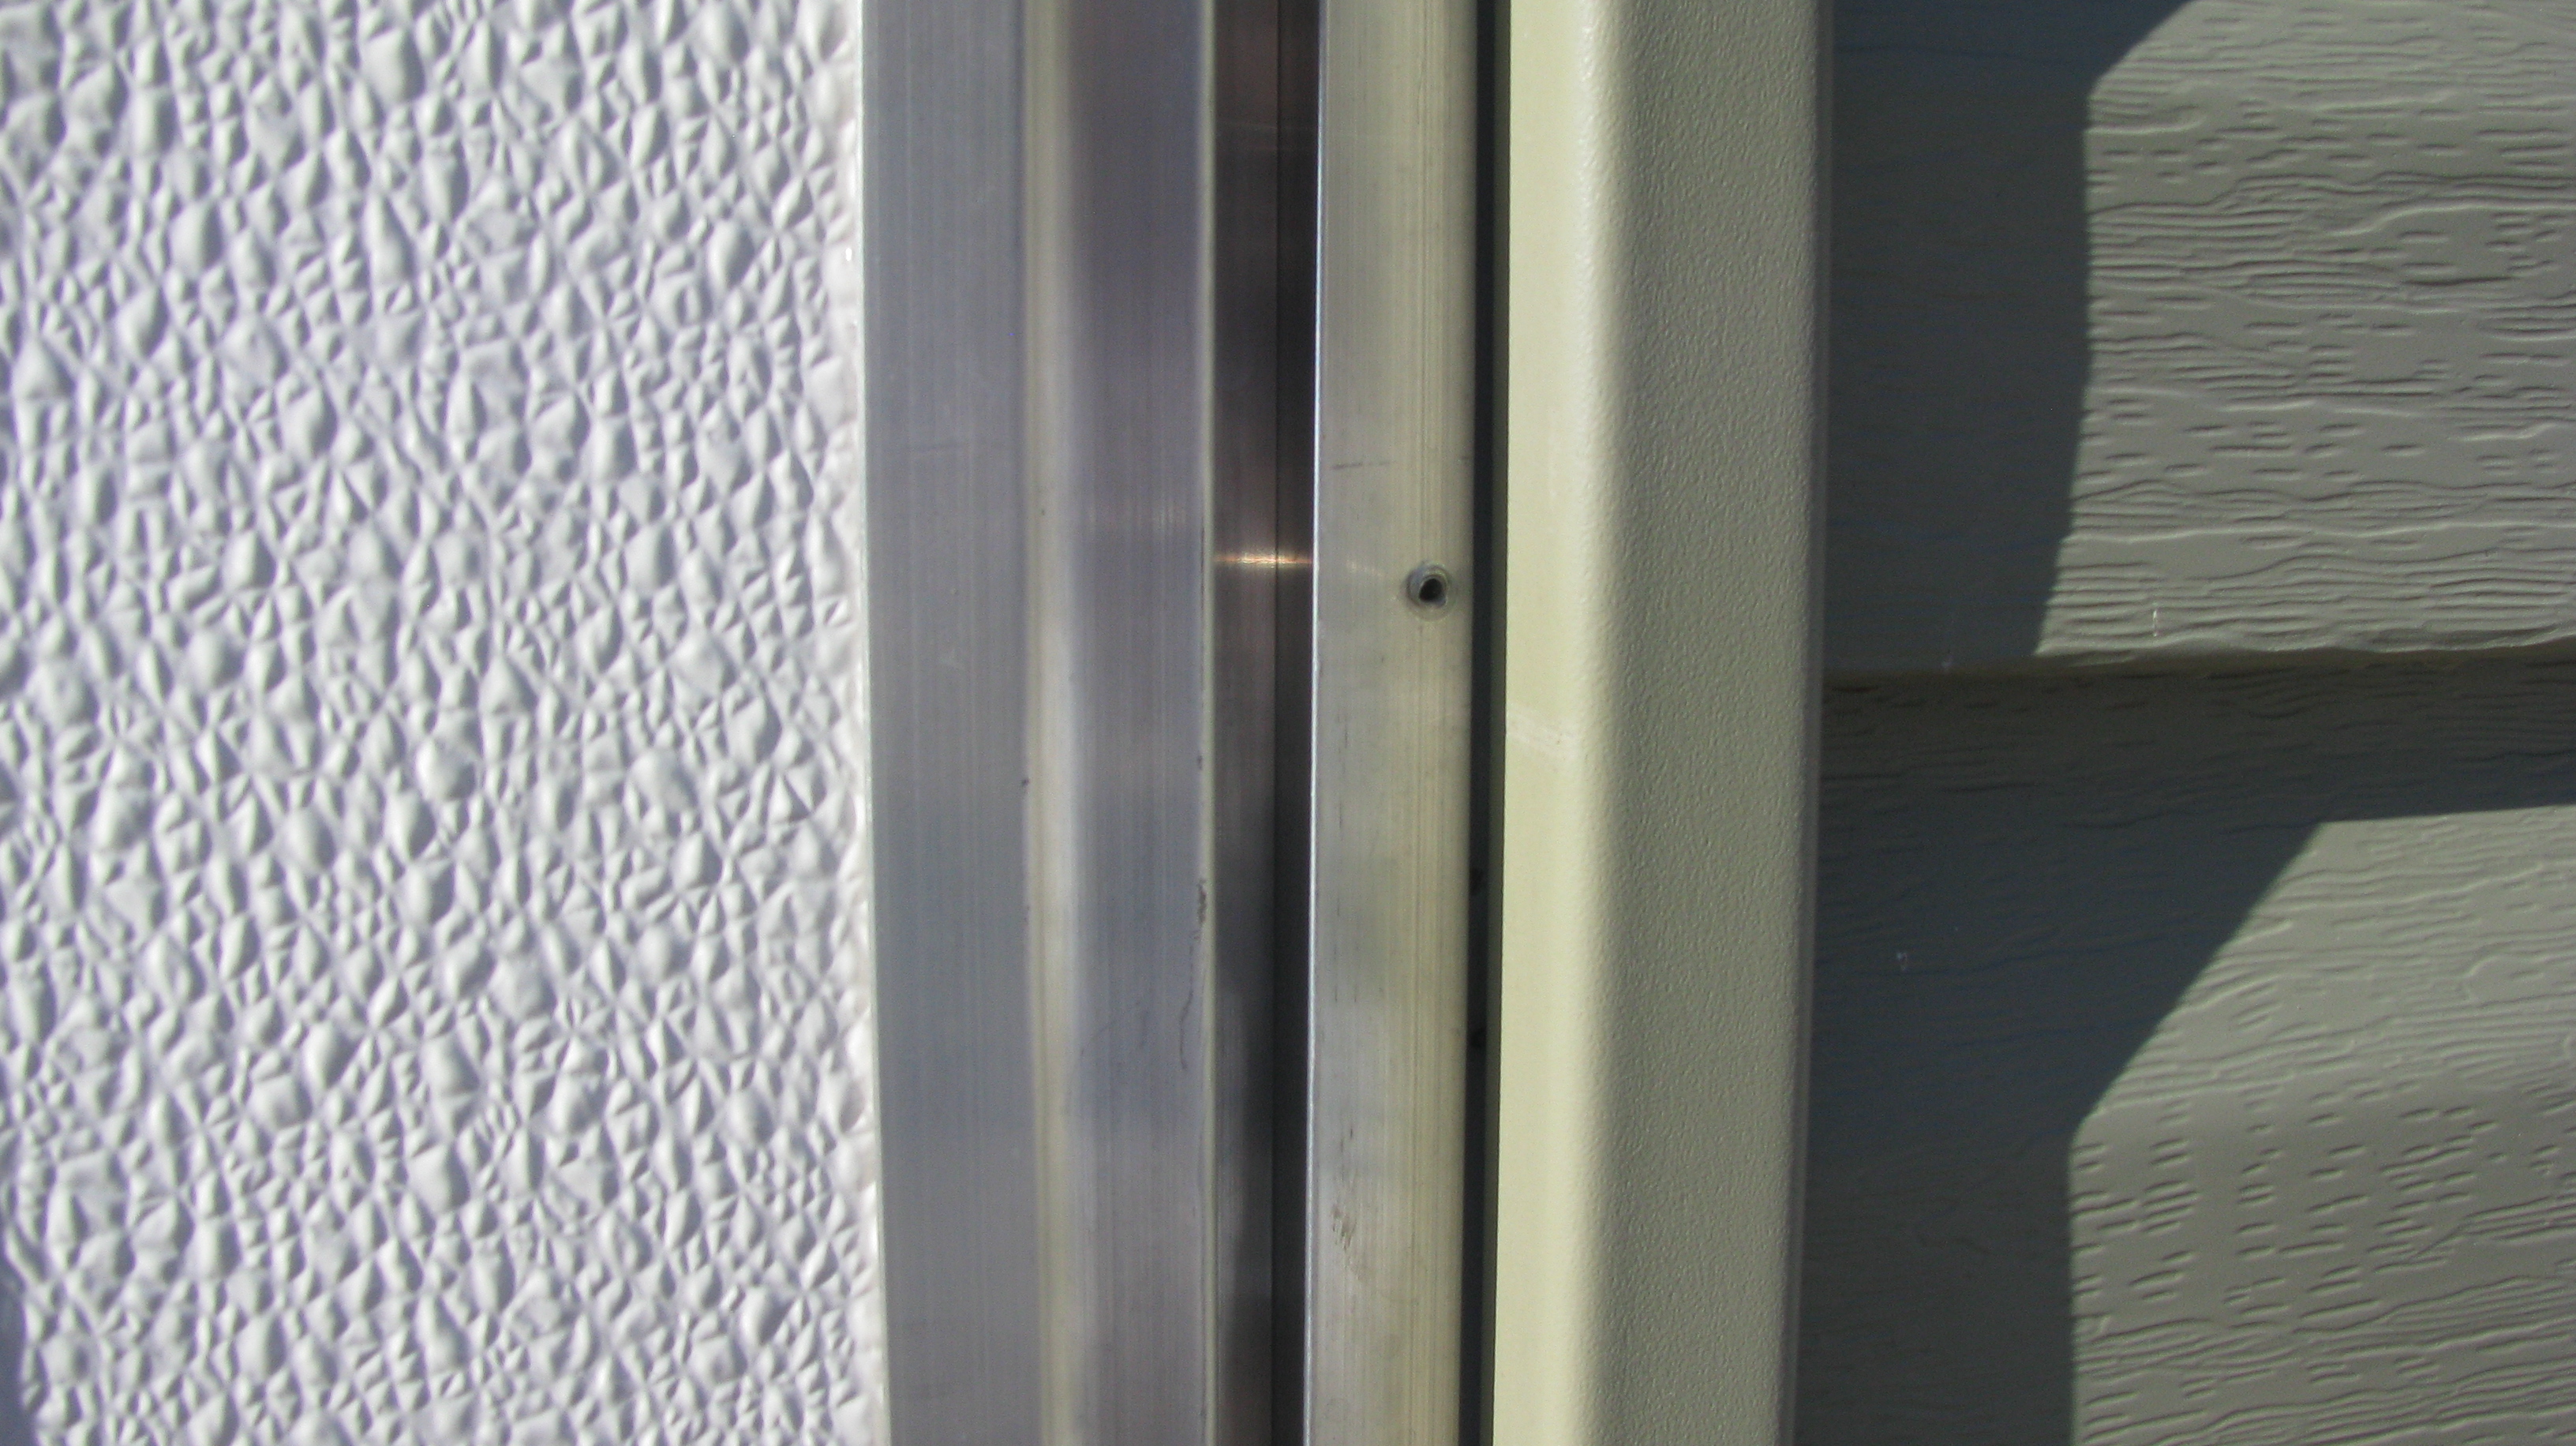  door flange missing screw